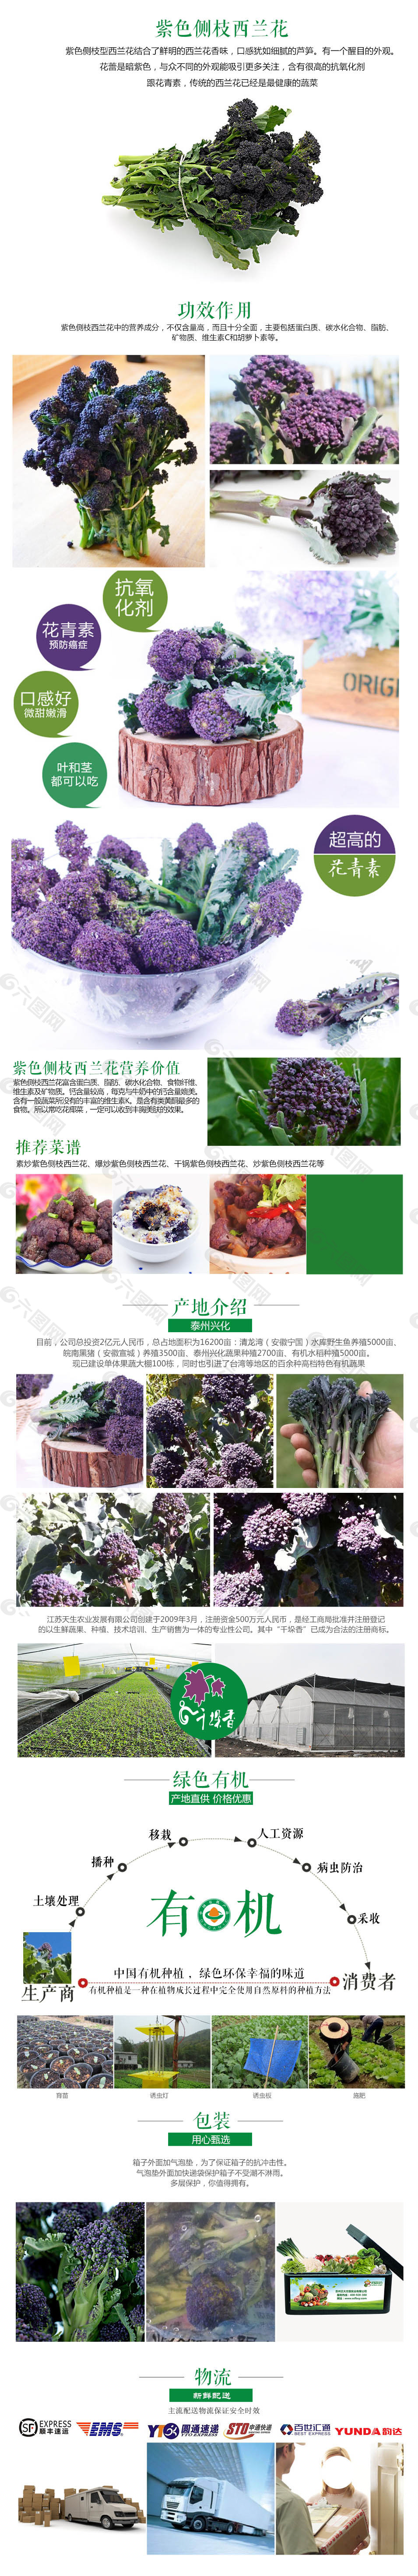 有机蔬菜蔬菜类设计高清PSD源文件下载